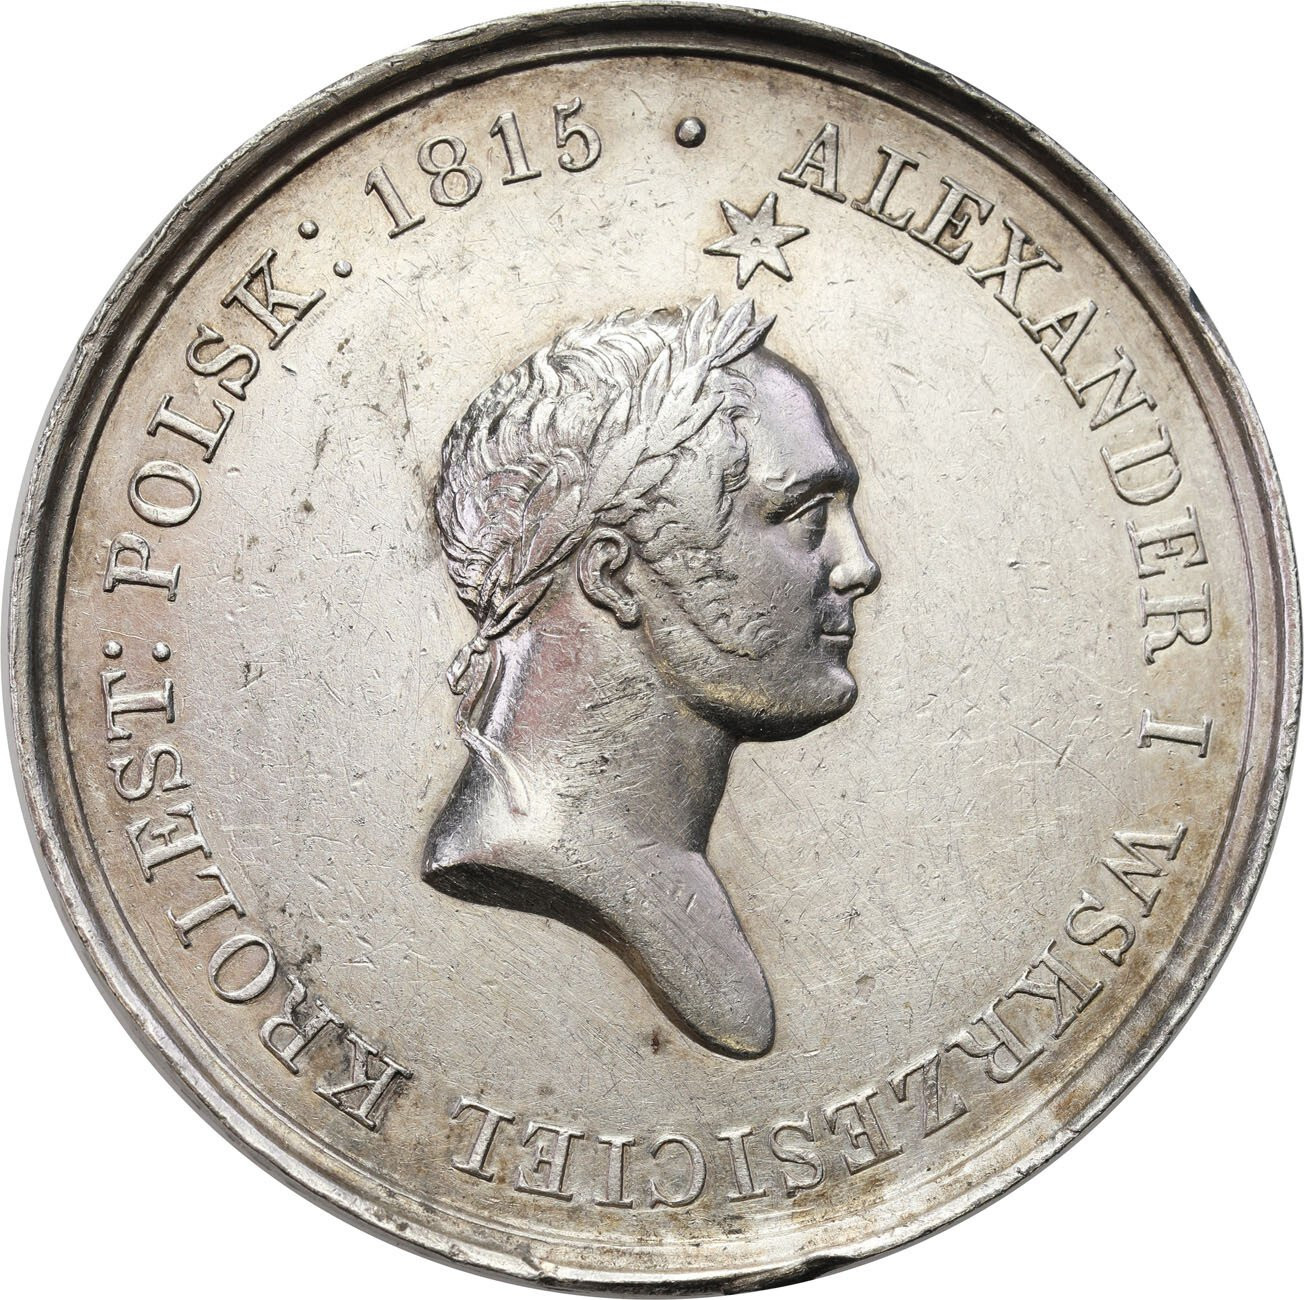 Królestwo Polskie/Rosja. Medal 1826 na śmierć Aleksandra I Polska opłakująca dobroczyńcę swojego, srebro – WERSJA DUŻA